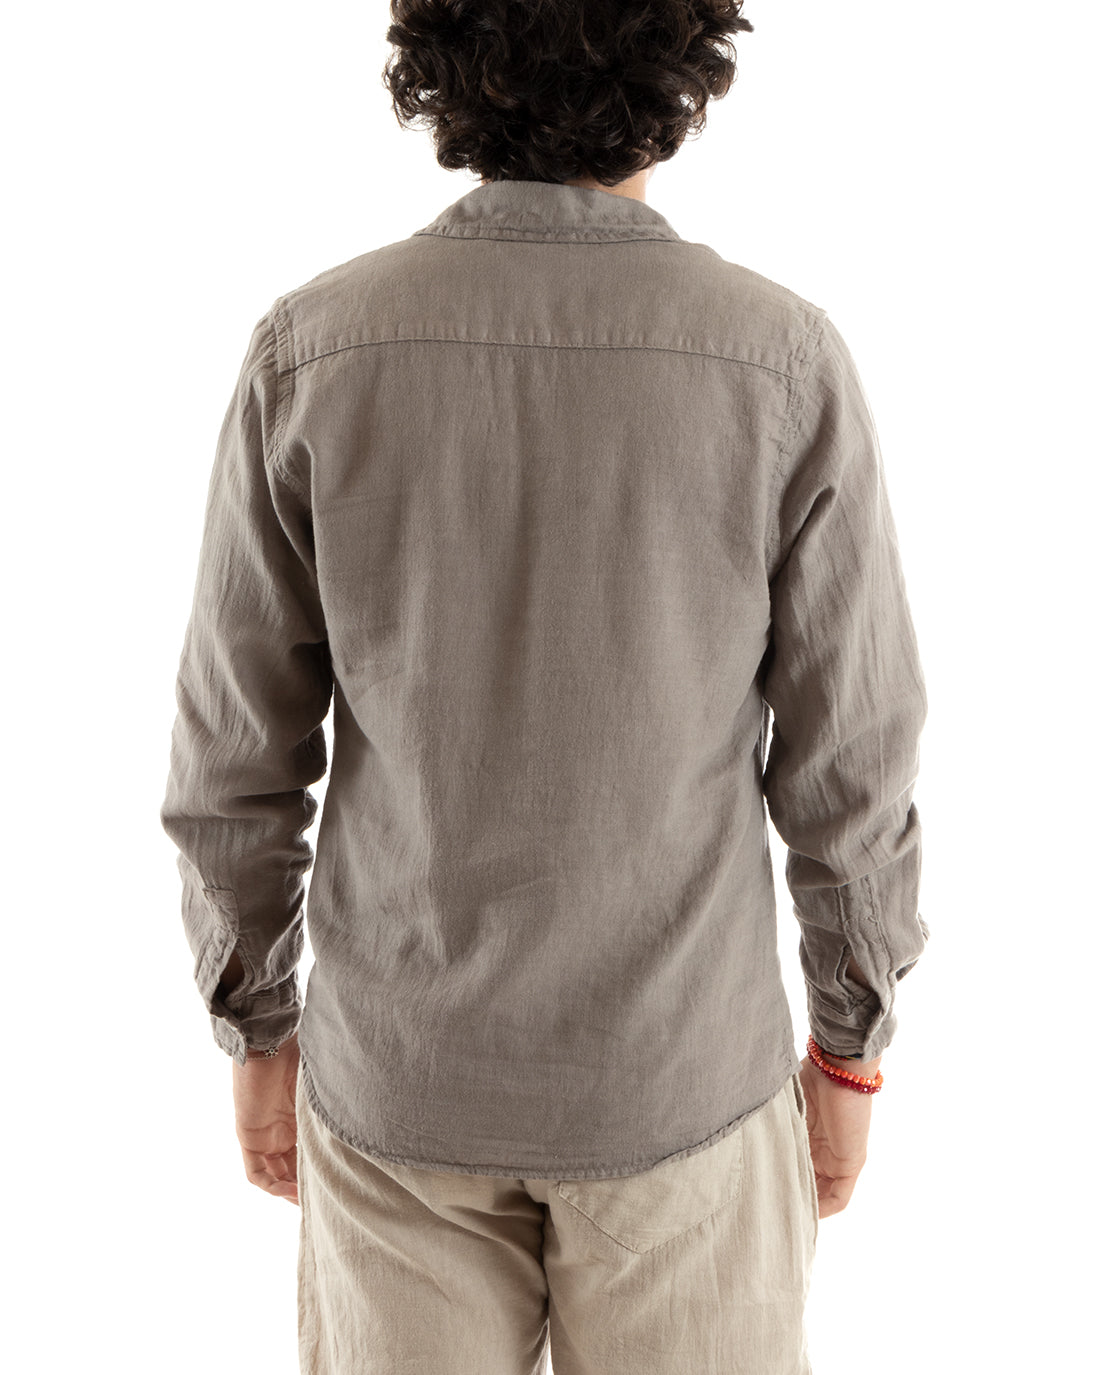 Camicia Uomo Con Colletto Slim Fit Lino Tinta Unita Maniche Lunghe Fango GIOSAL-C2756A